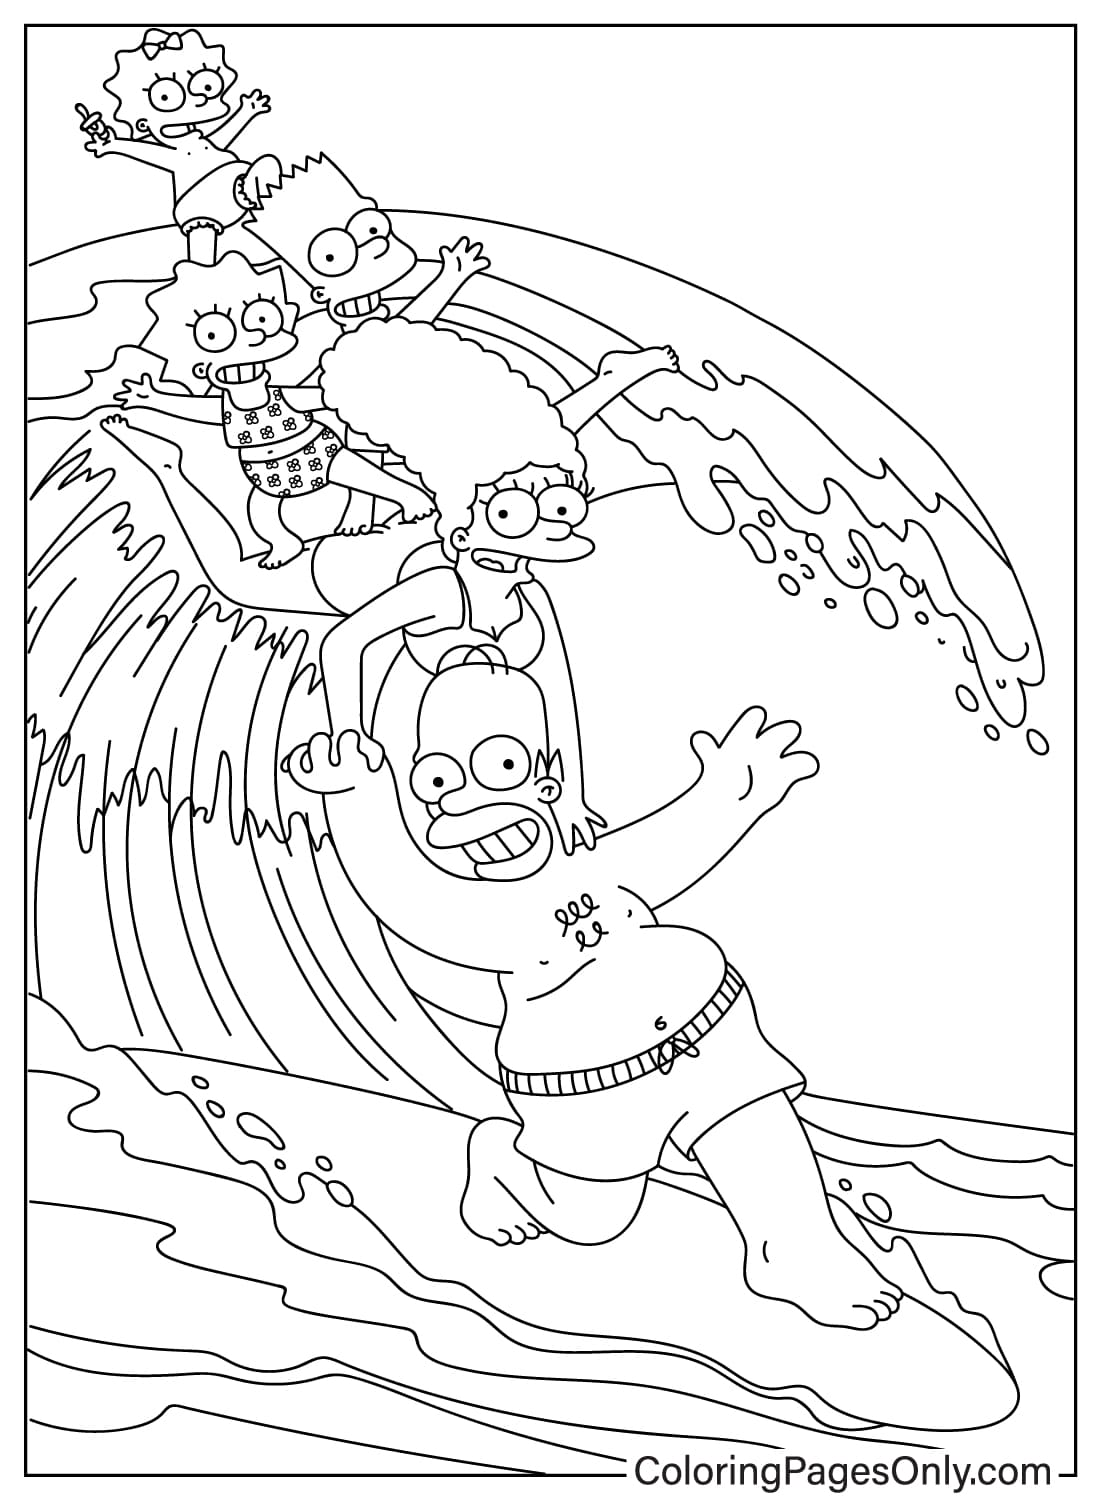 Раскраска Симпсоны из мультфильма Симпсоны